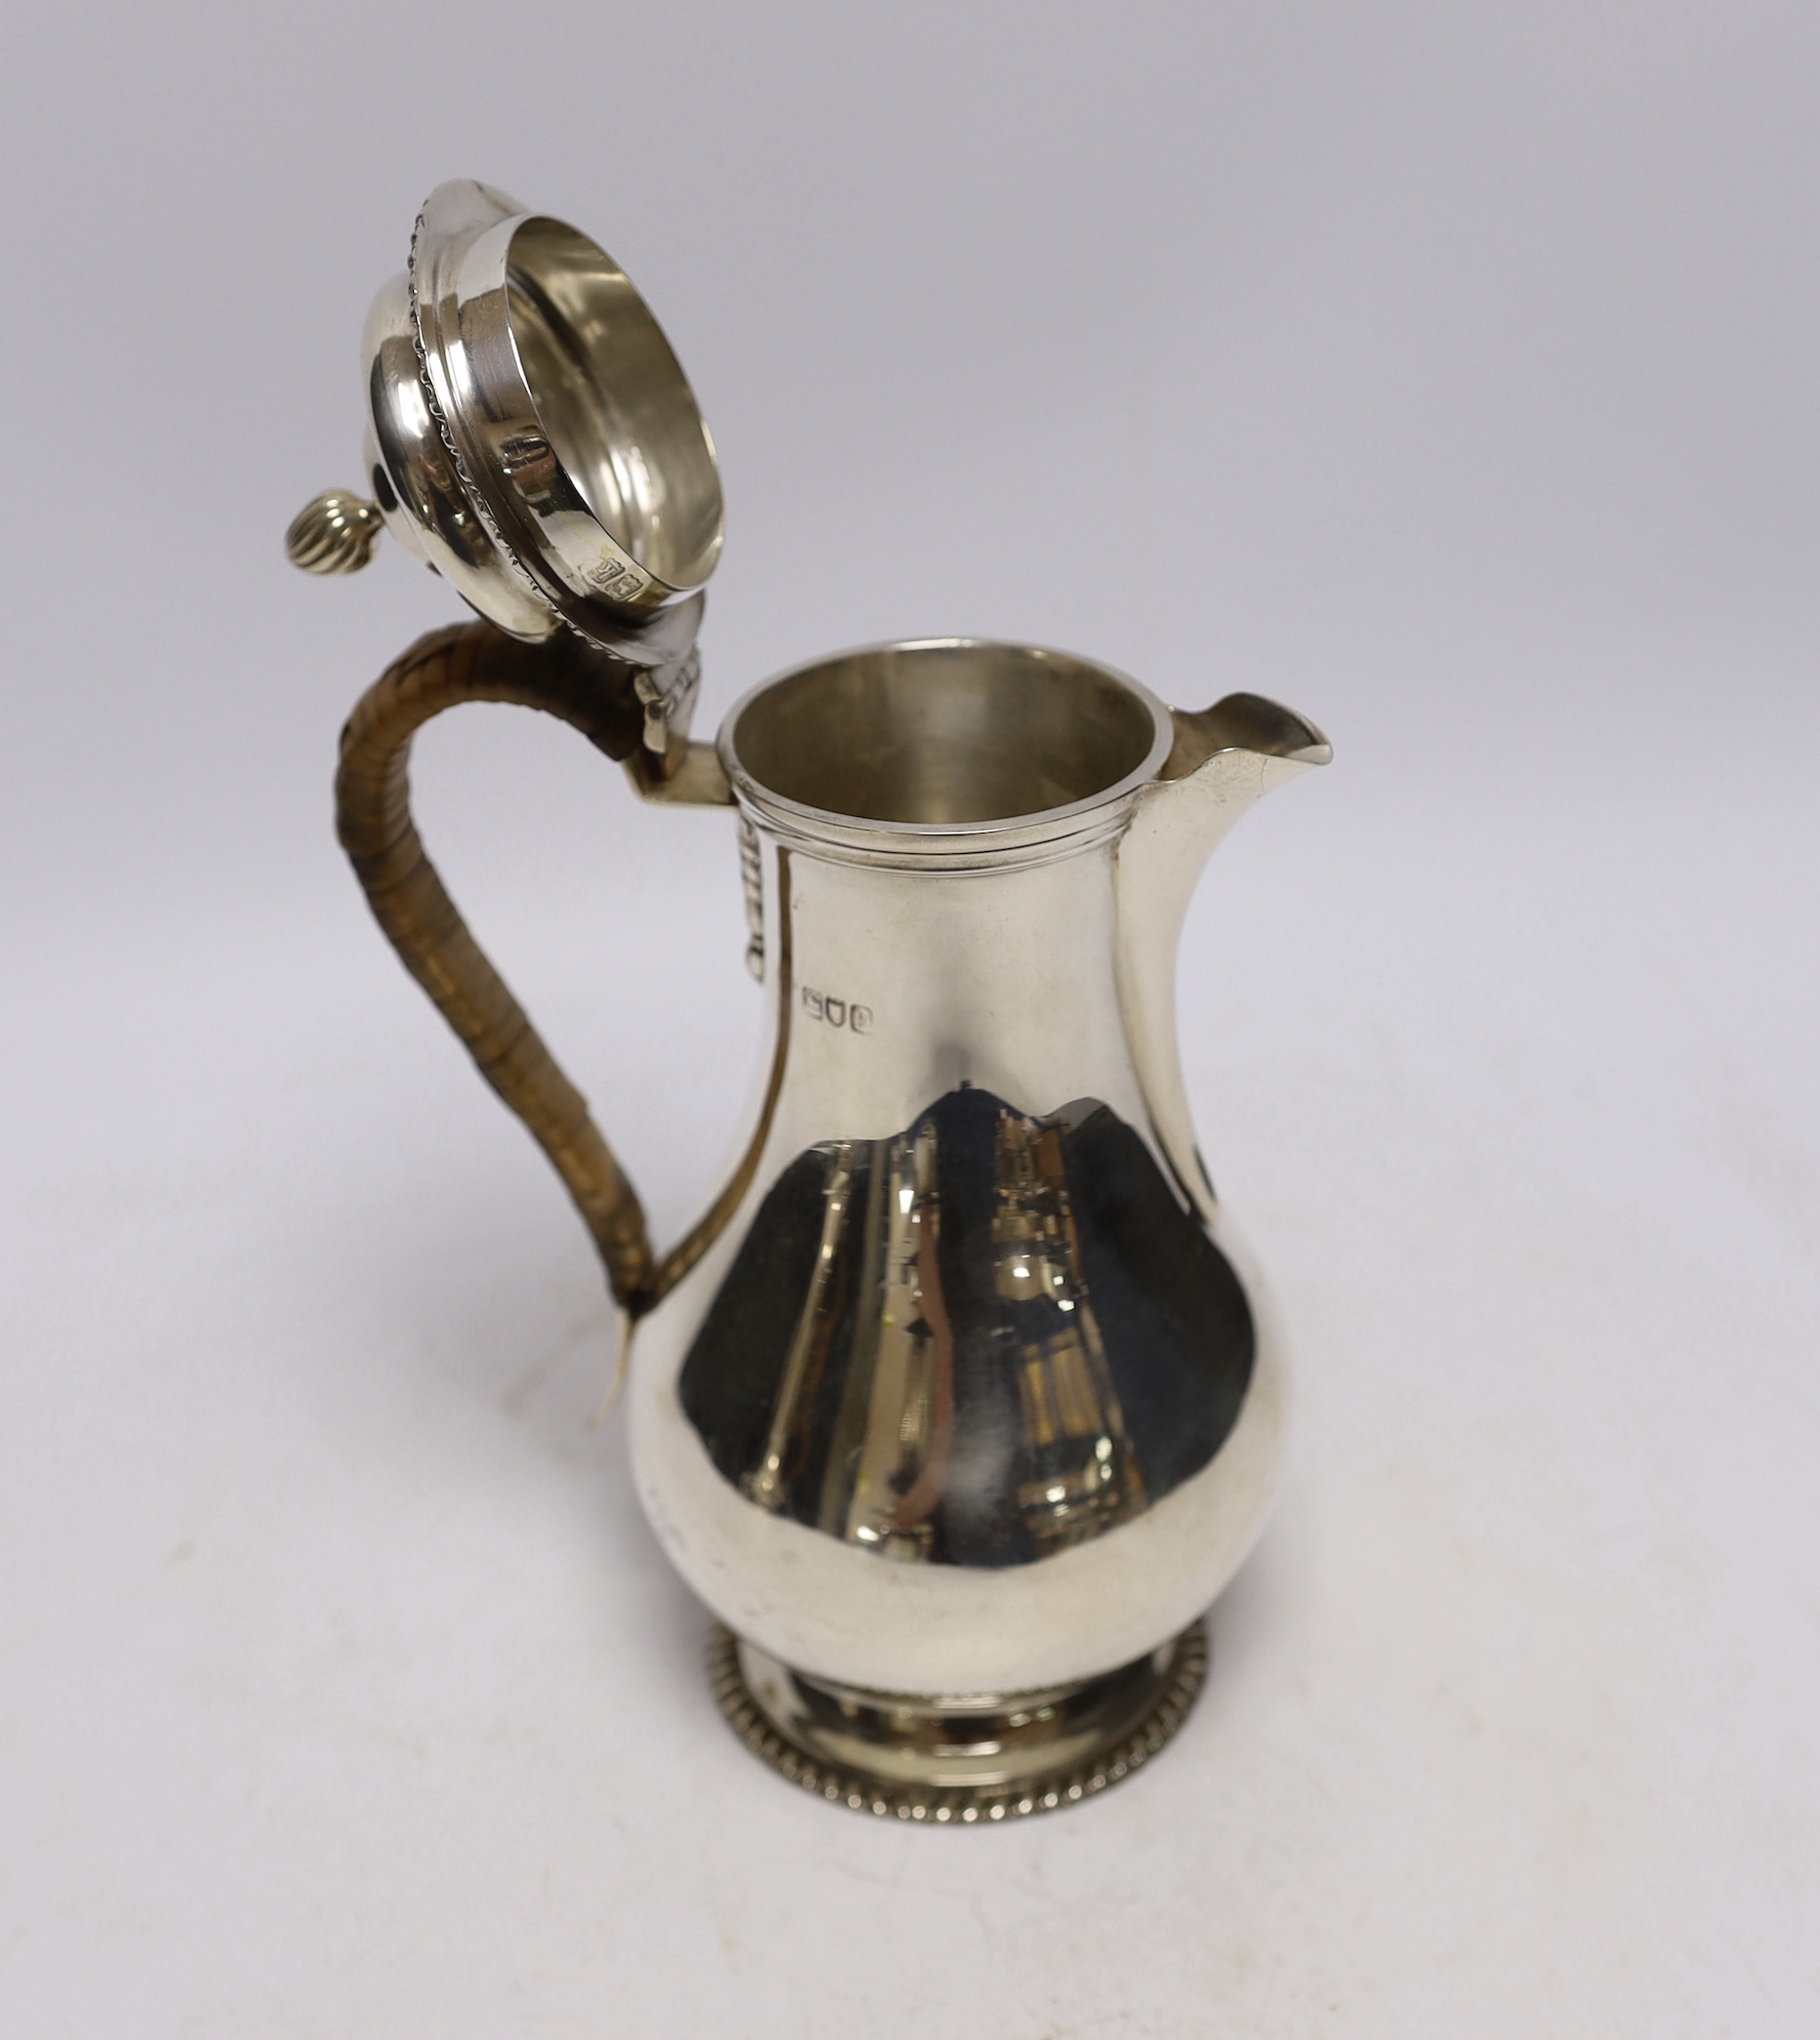 An Edwardian silver baluster hot water pot, London, 1905, height 21cm, gross weight 14.7oz.